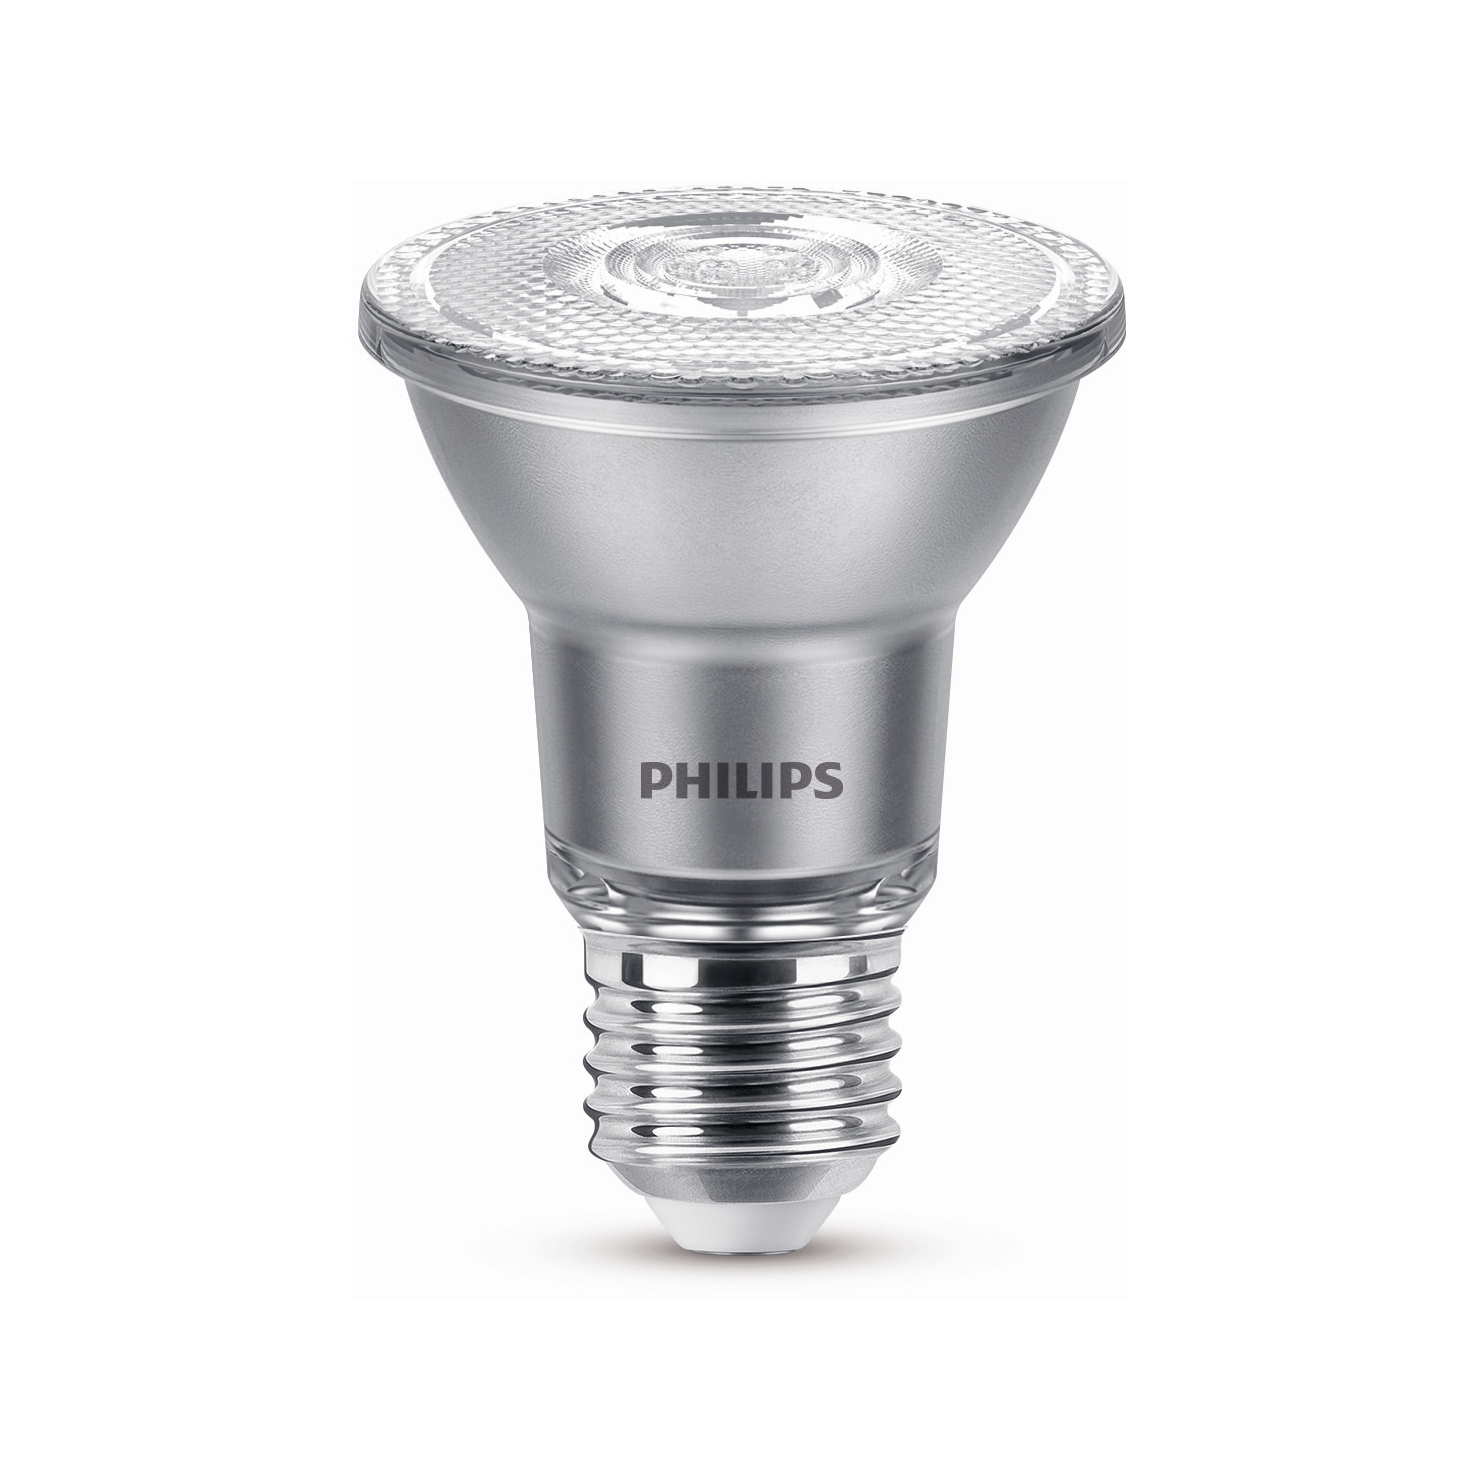 Philips LED Spot PAR20 6-50W E27 927 25° DIM 500lm 2700K